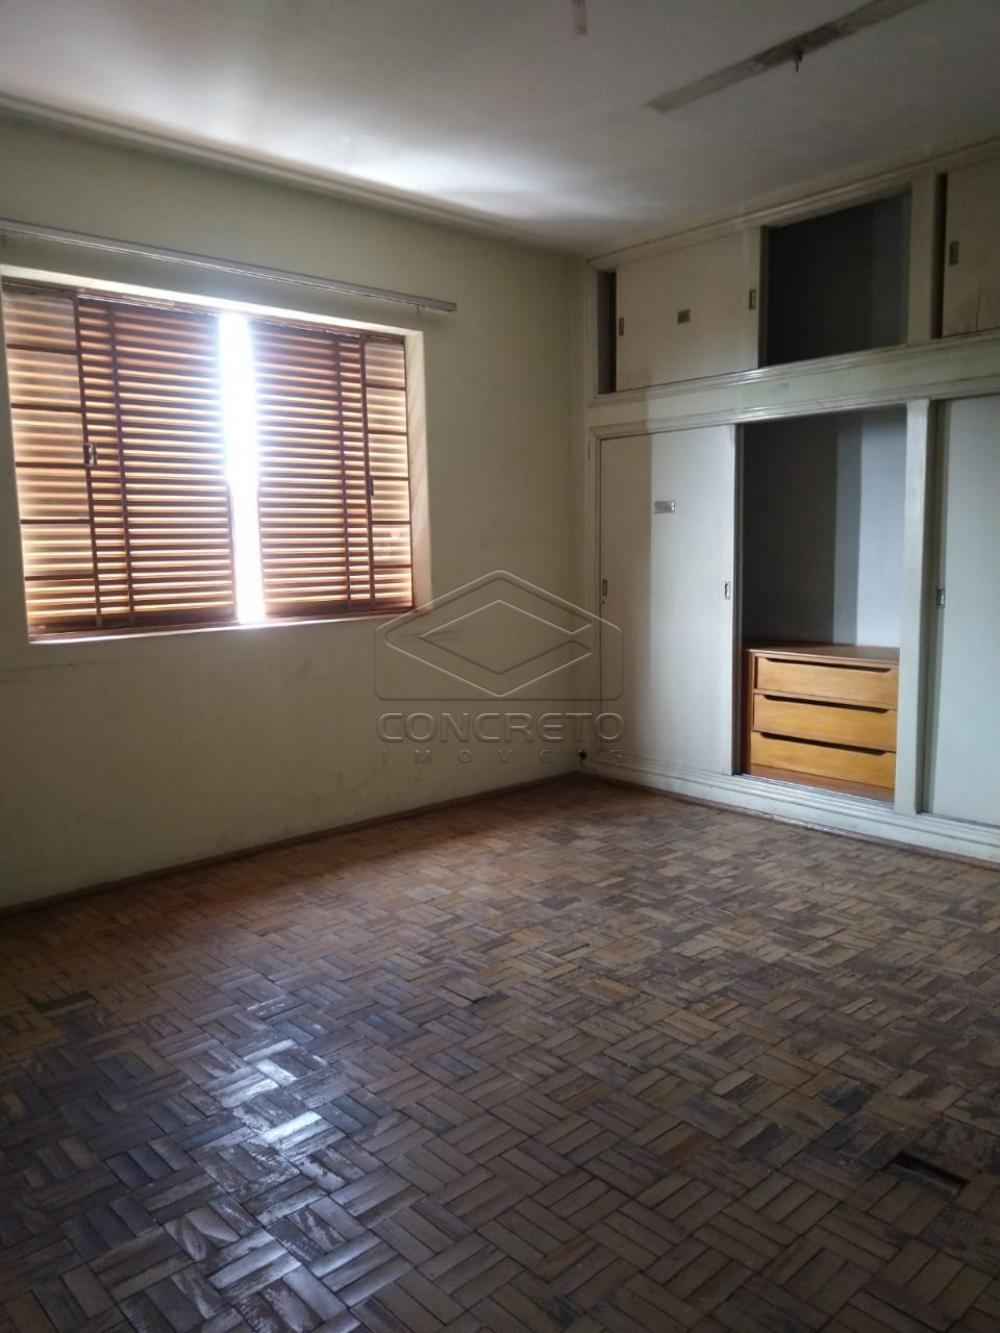 Comprar Casa / Padrão em Bauru R$ 335.000,00 - Foto 4